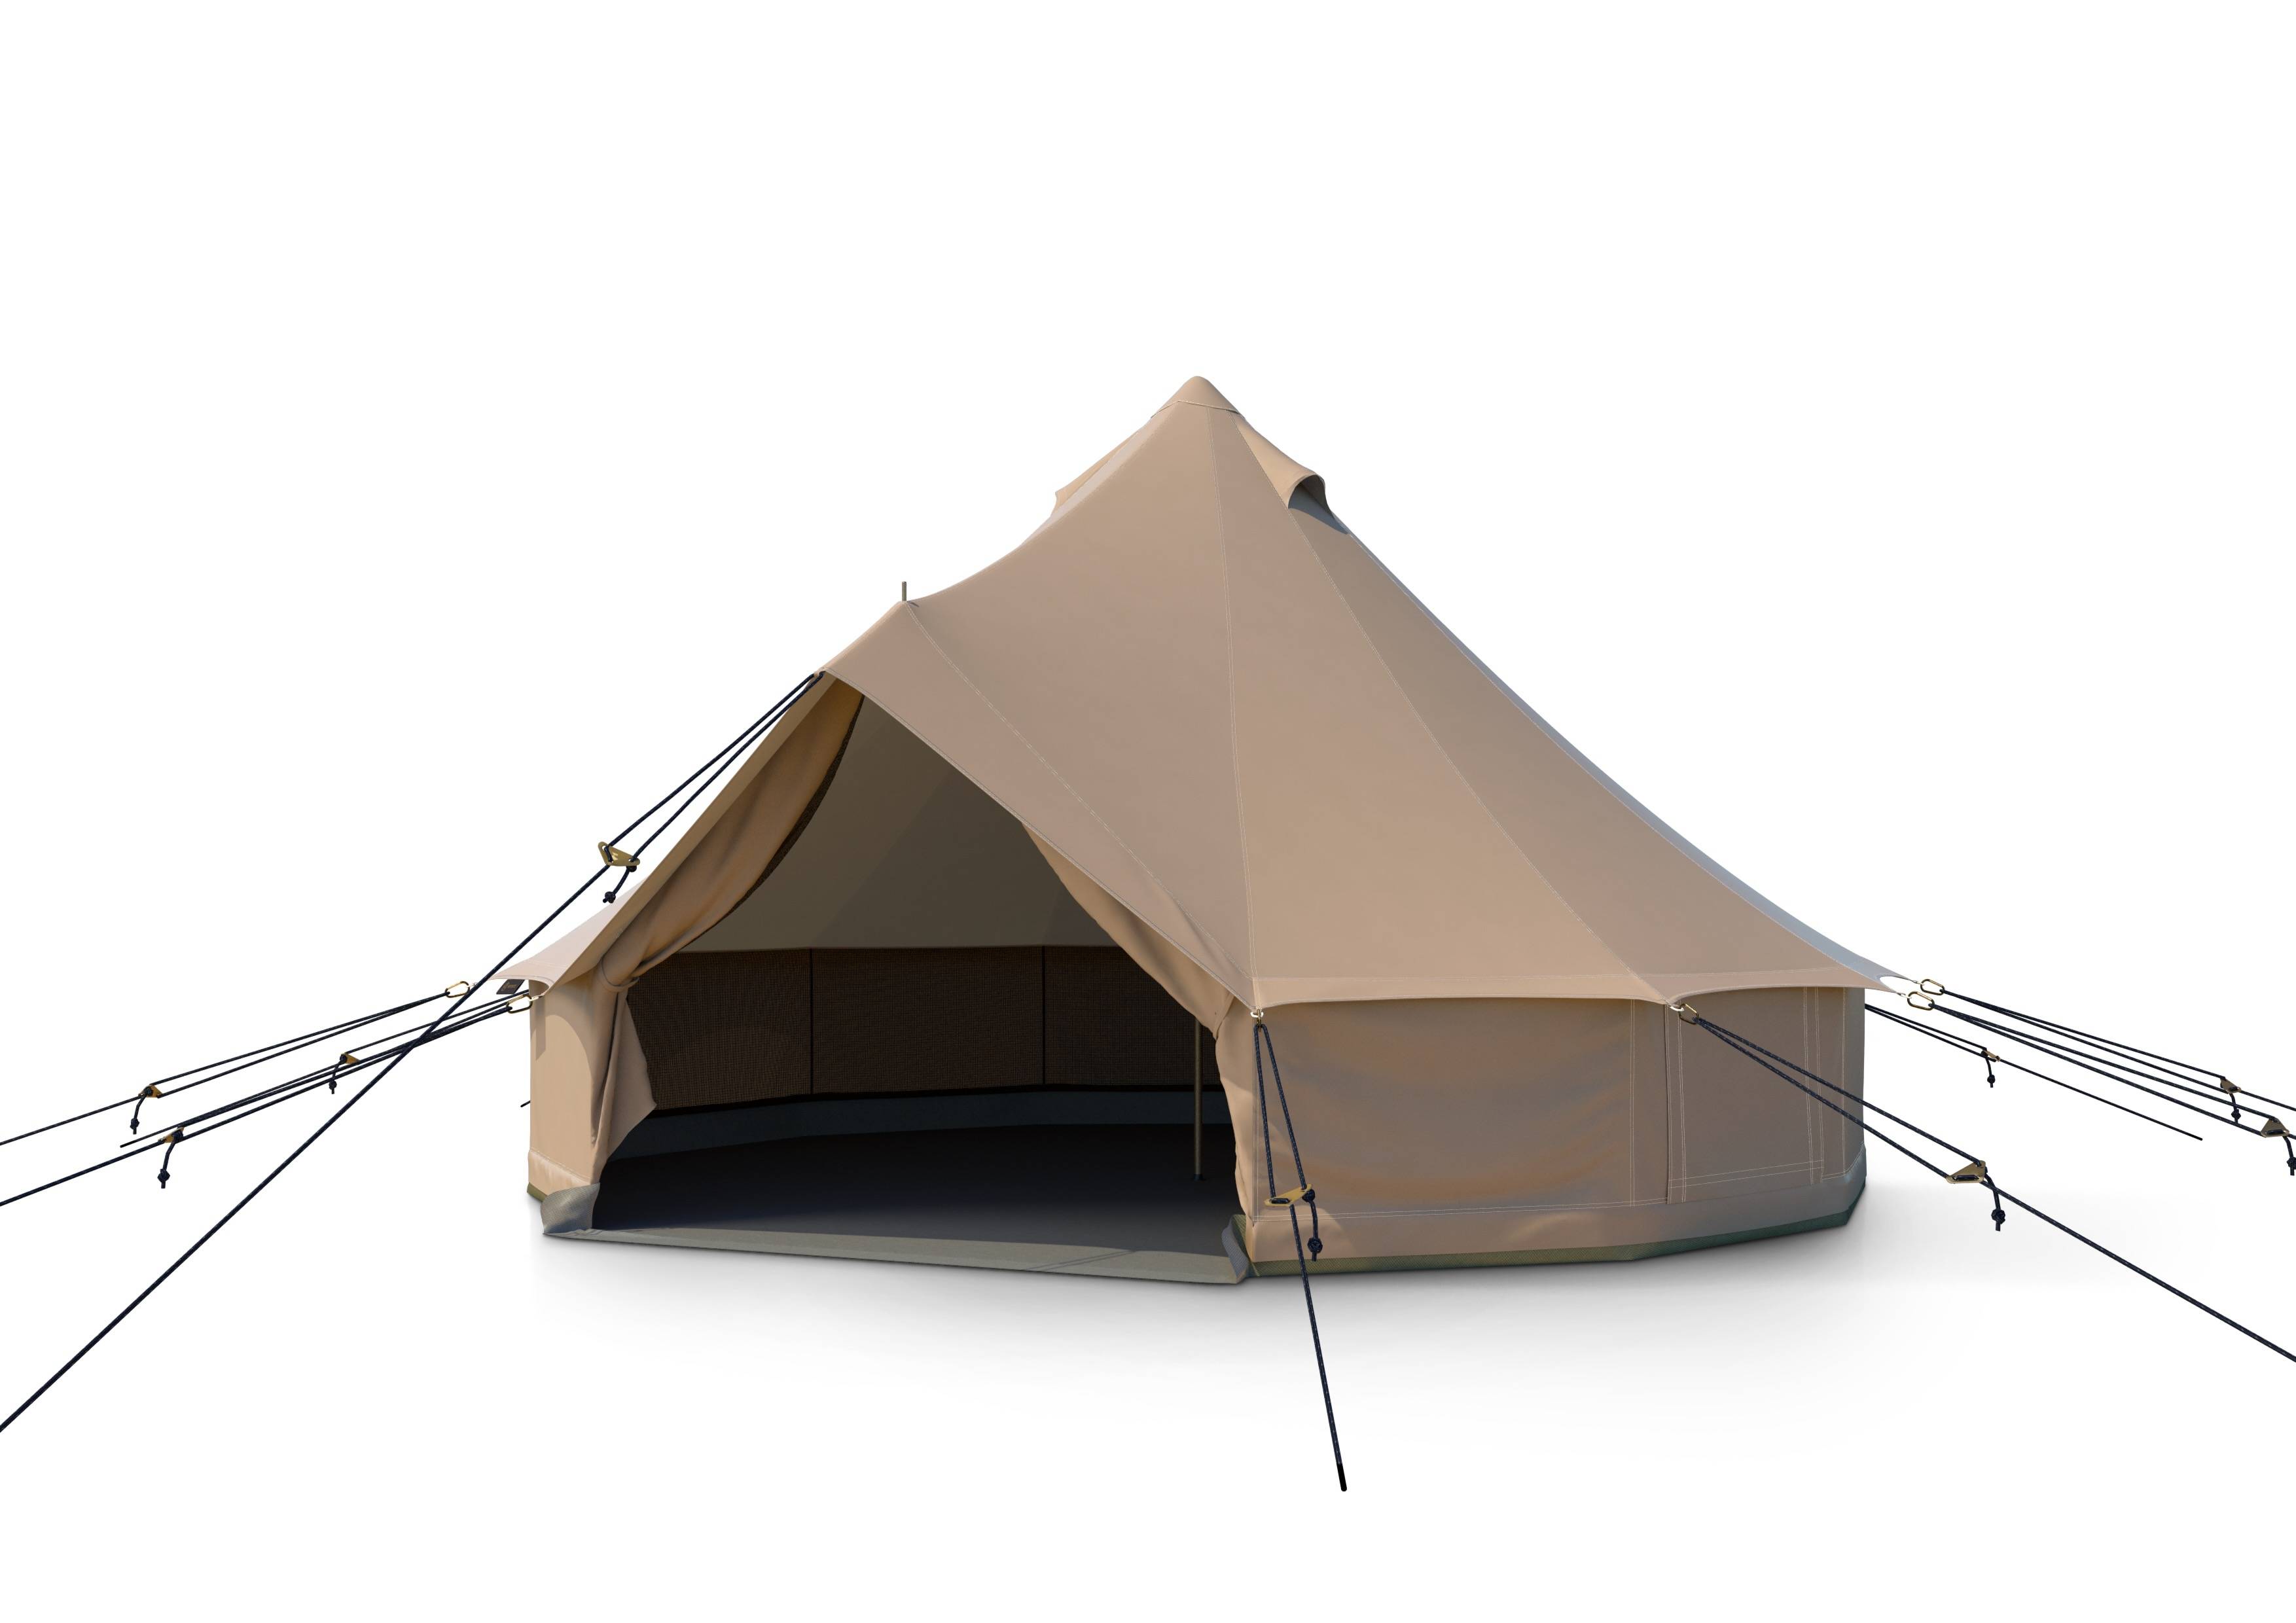  туристическая палатка-шатер Autentic Large Bell 4.4, Desert для .